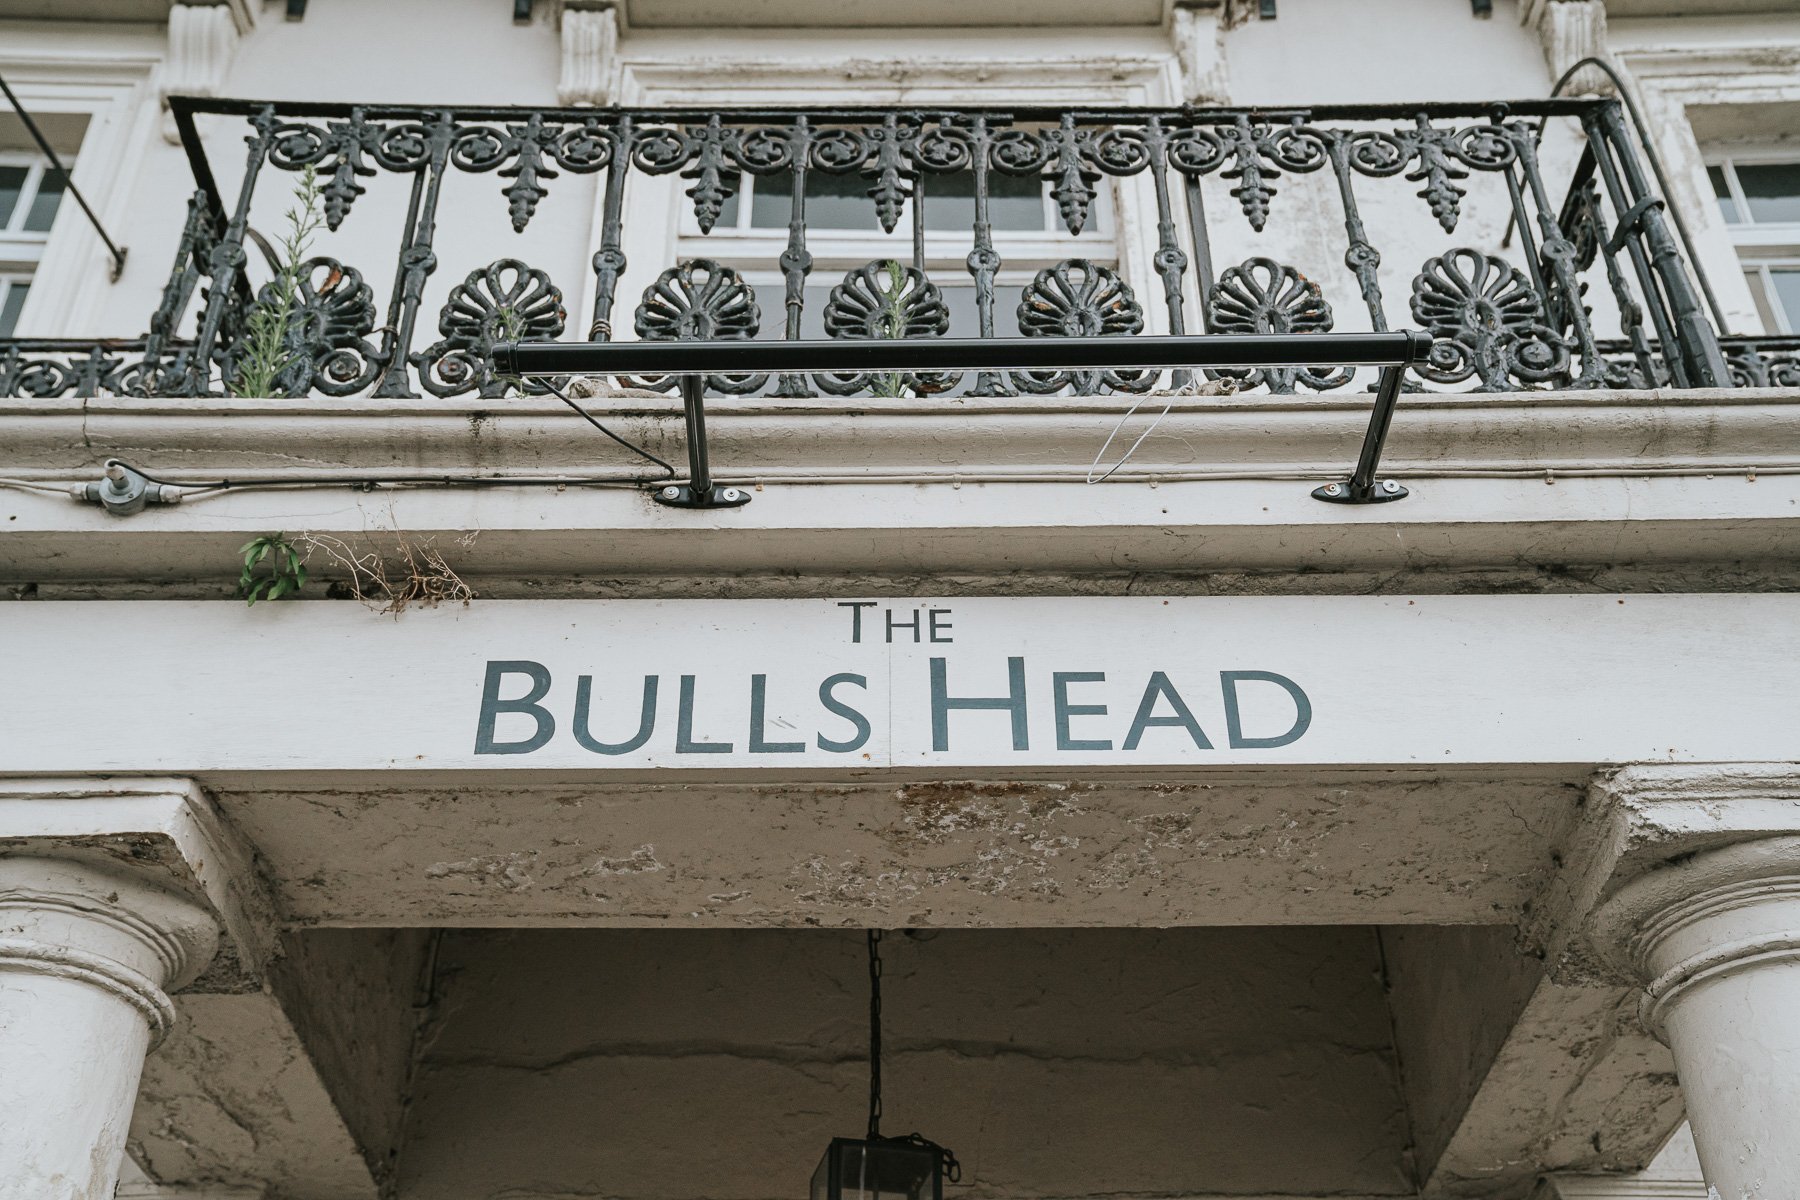  The Bulls Head Pub sign above the door of the pub. 